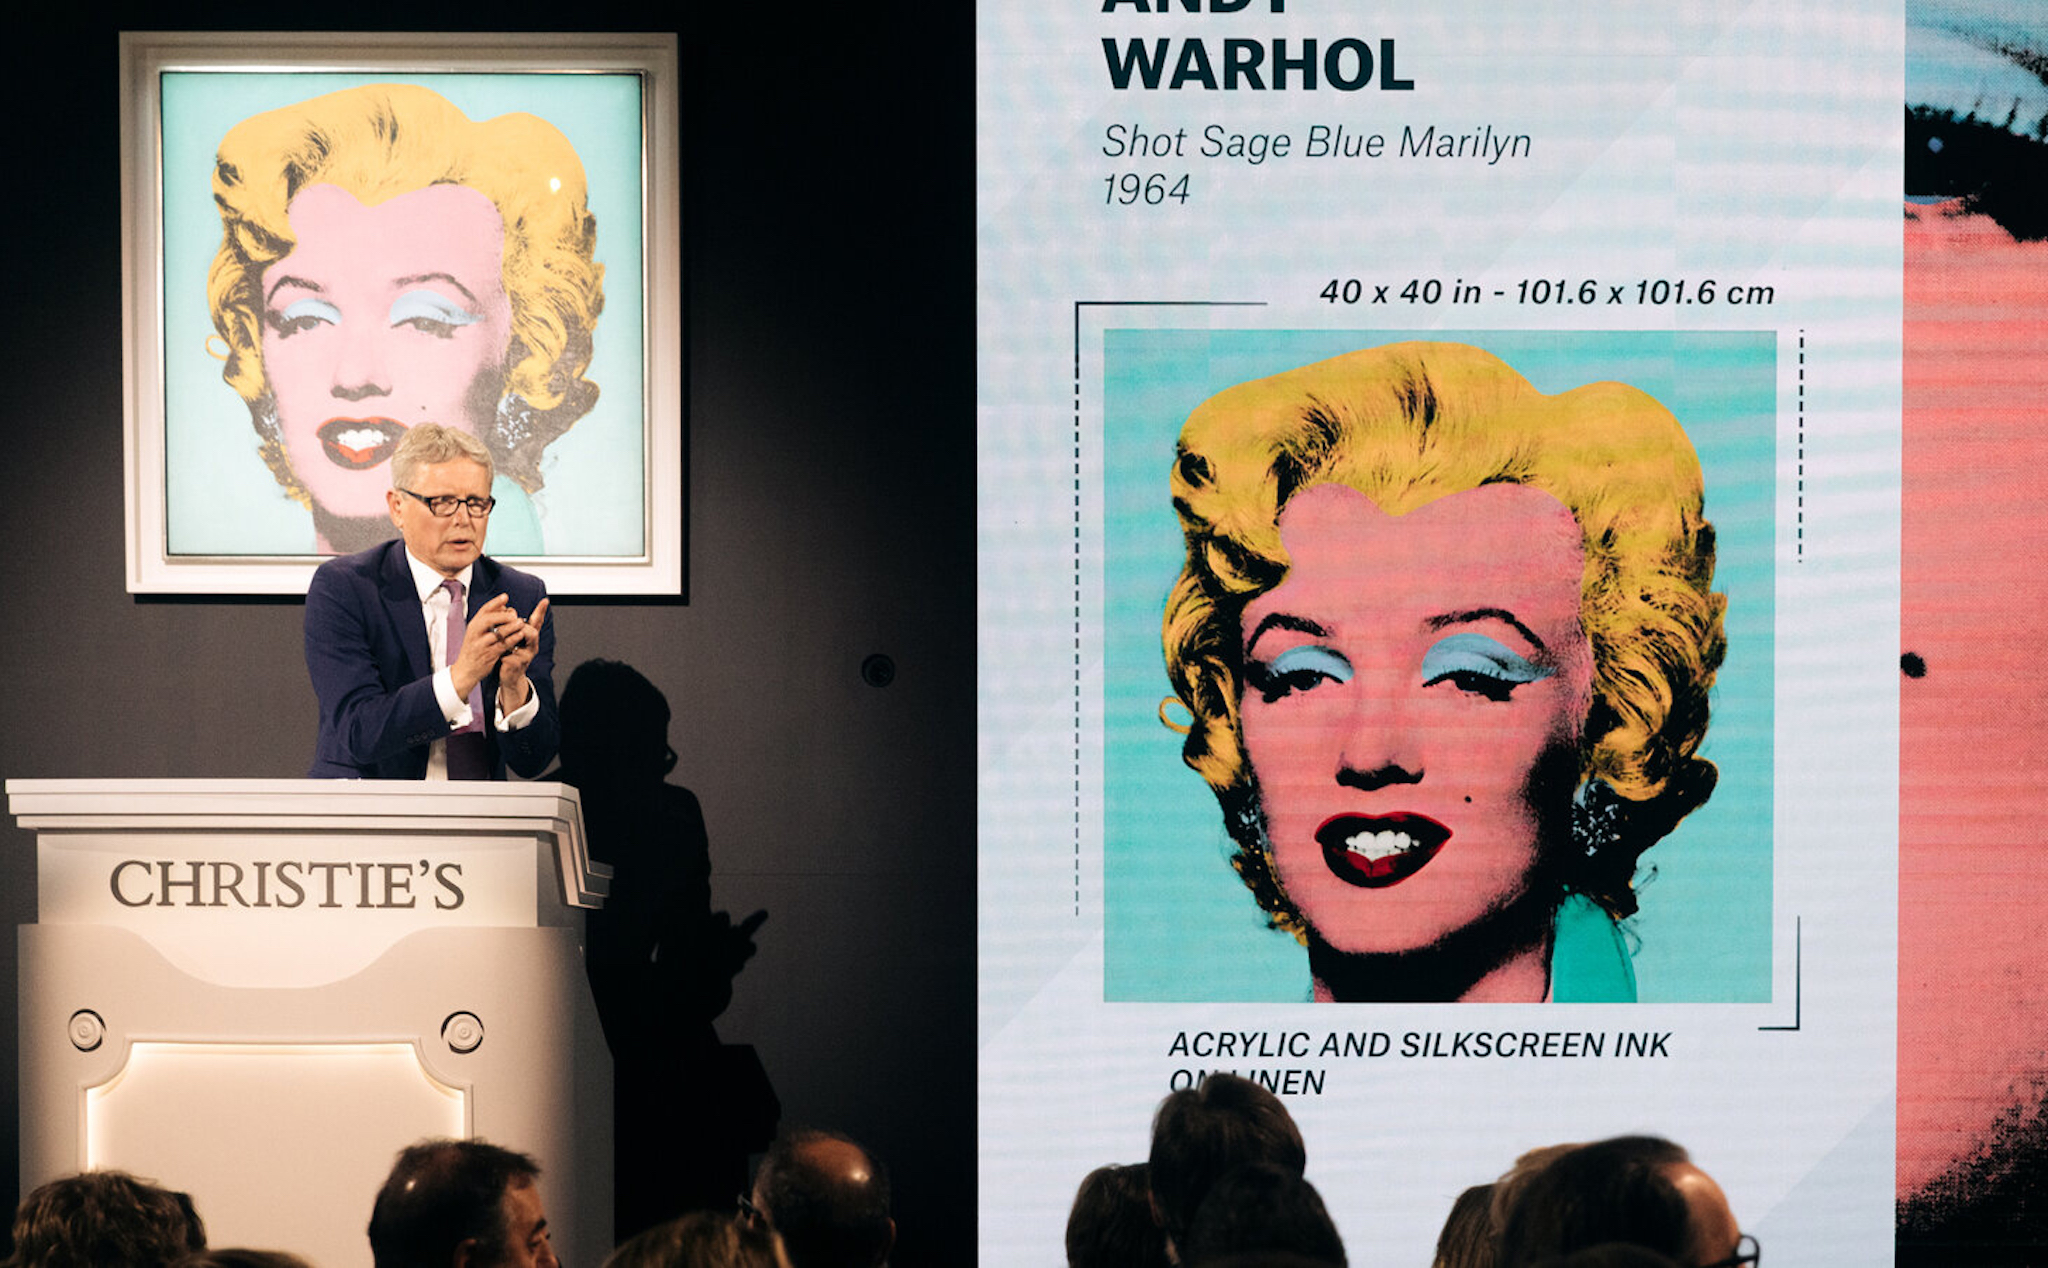 Tranh vẽ Marilyn Monroe trở thành tác phẩm đắt giá nhất thế kỷ 20